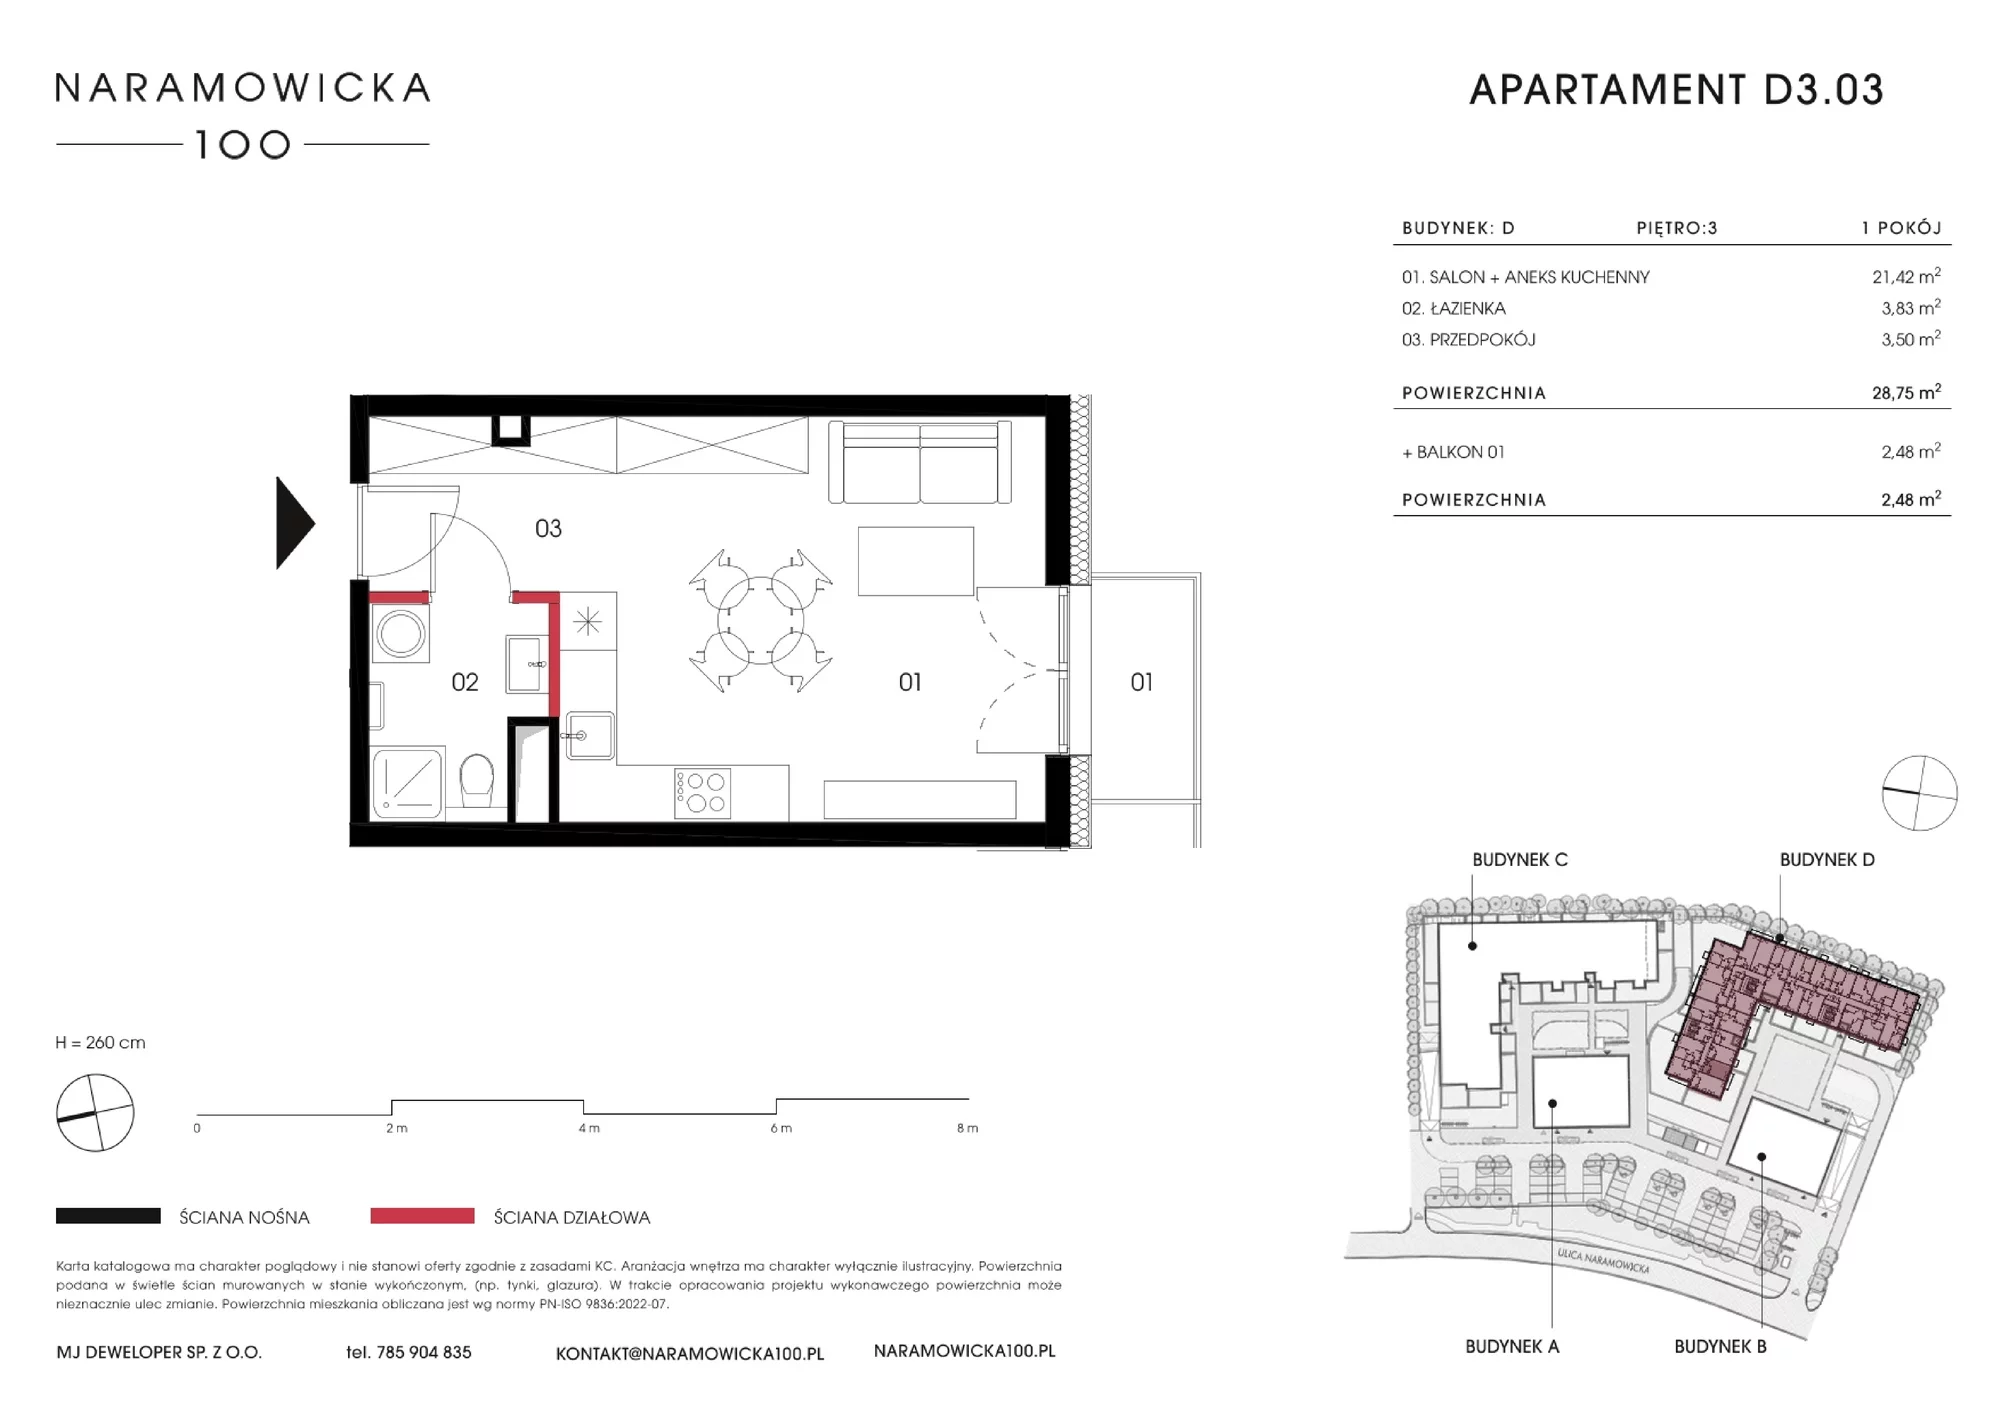 Mieszkanie 28,65 m², piętro 3, oferta nr D 3.03, Naramowicka, Poznań, Winogrady, Winogrady, ul. Naramowicka 100